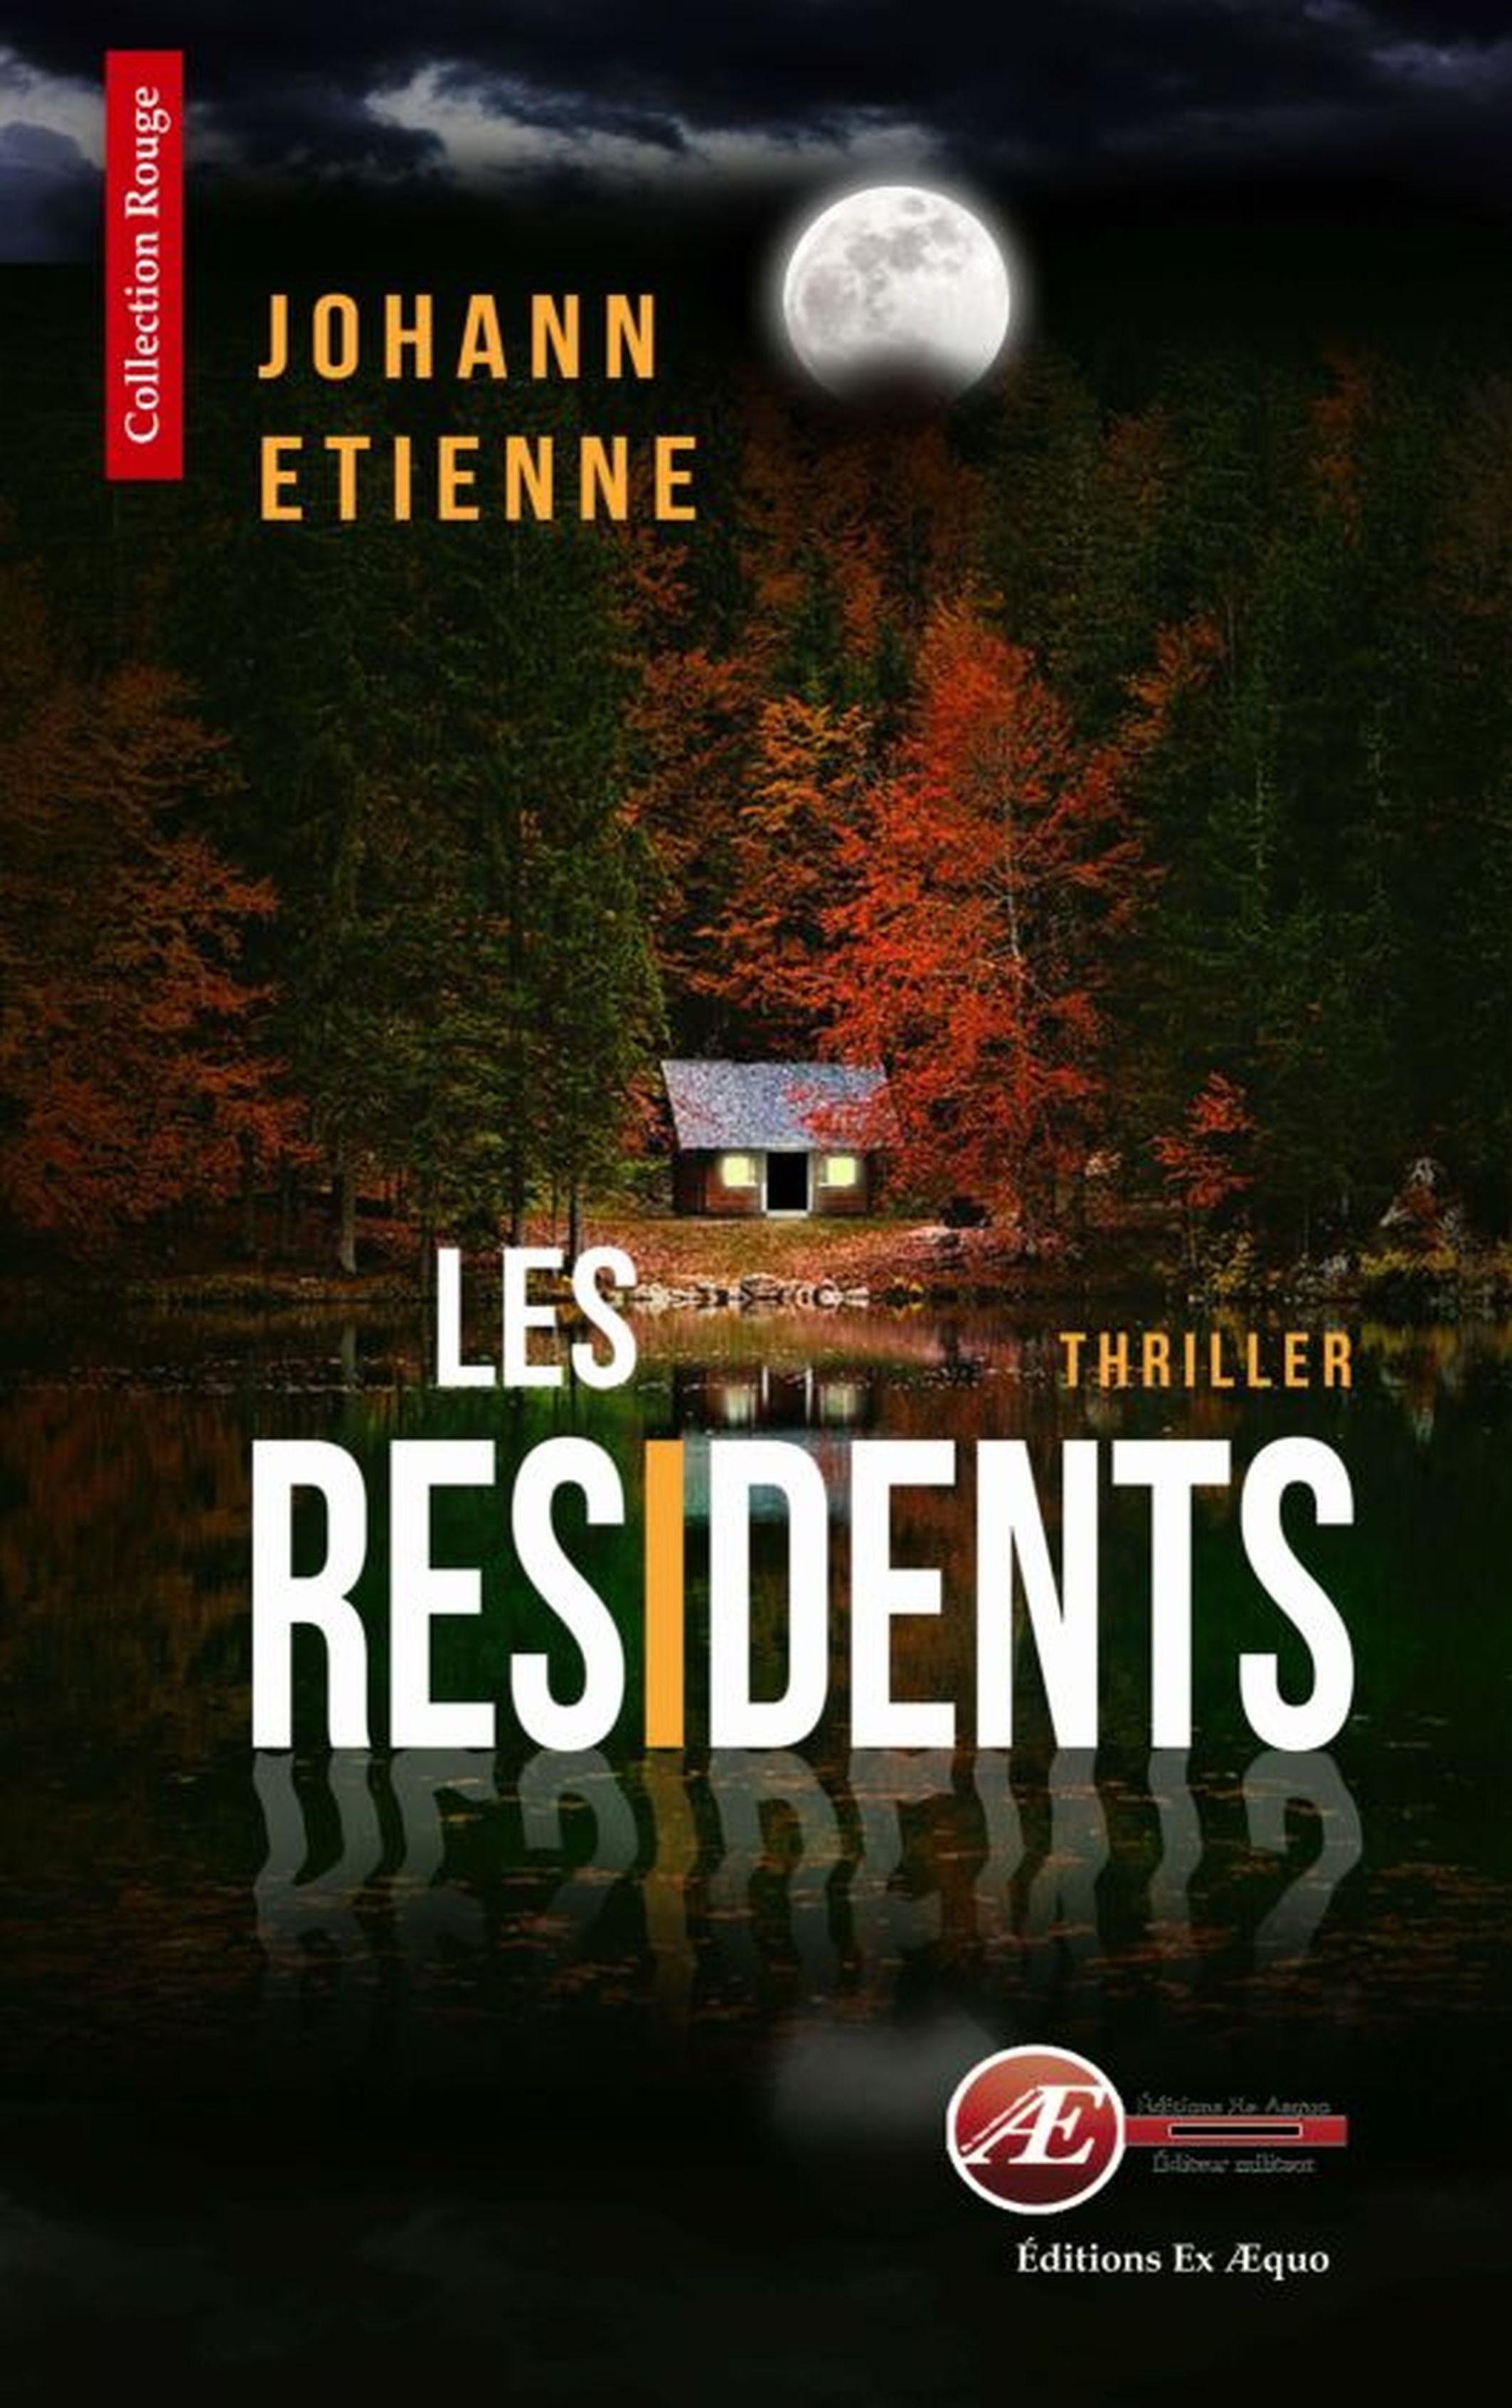 You are currently viewing Les résidents, de Johann Etienne